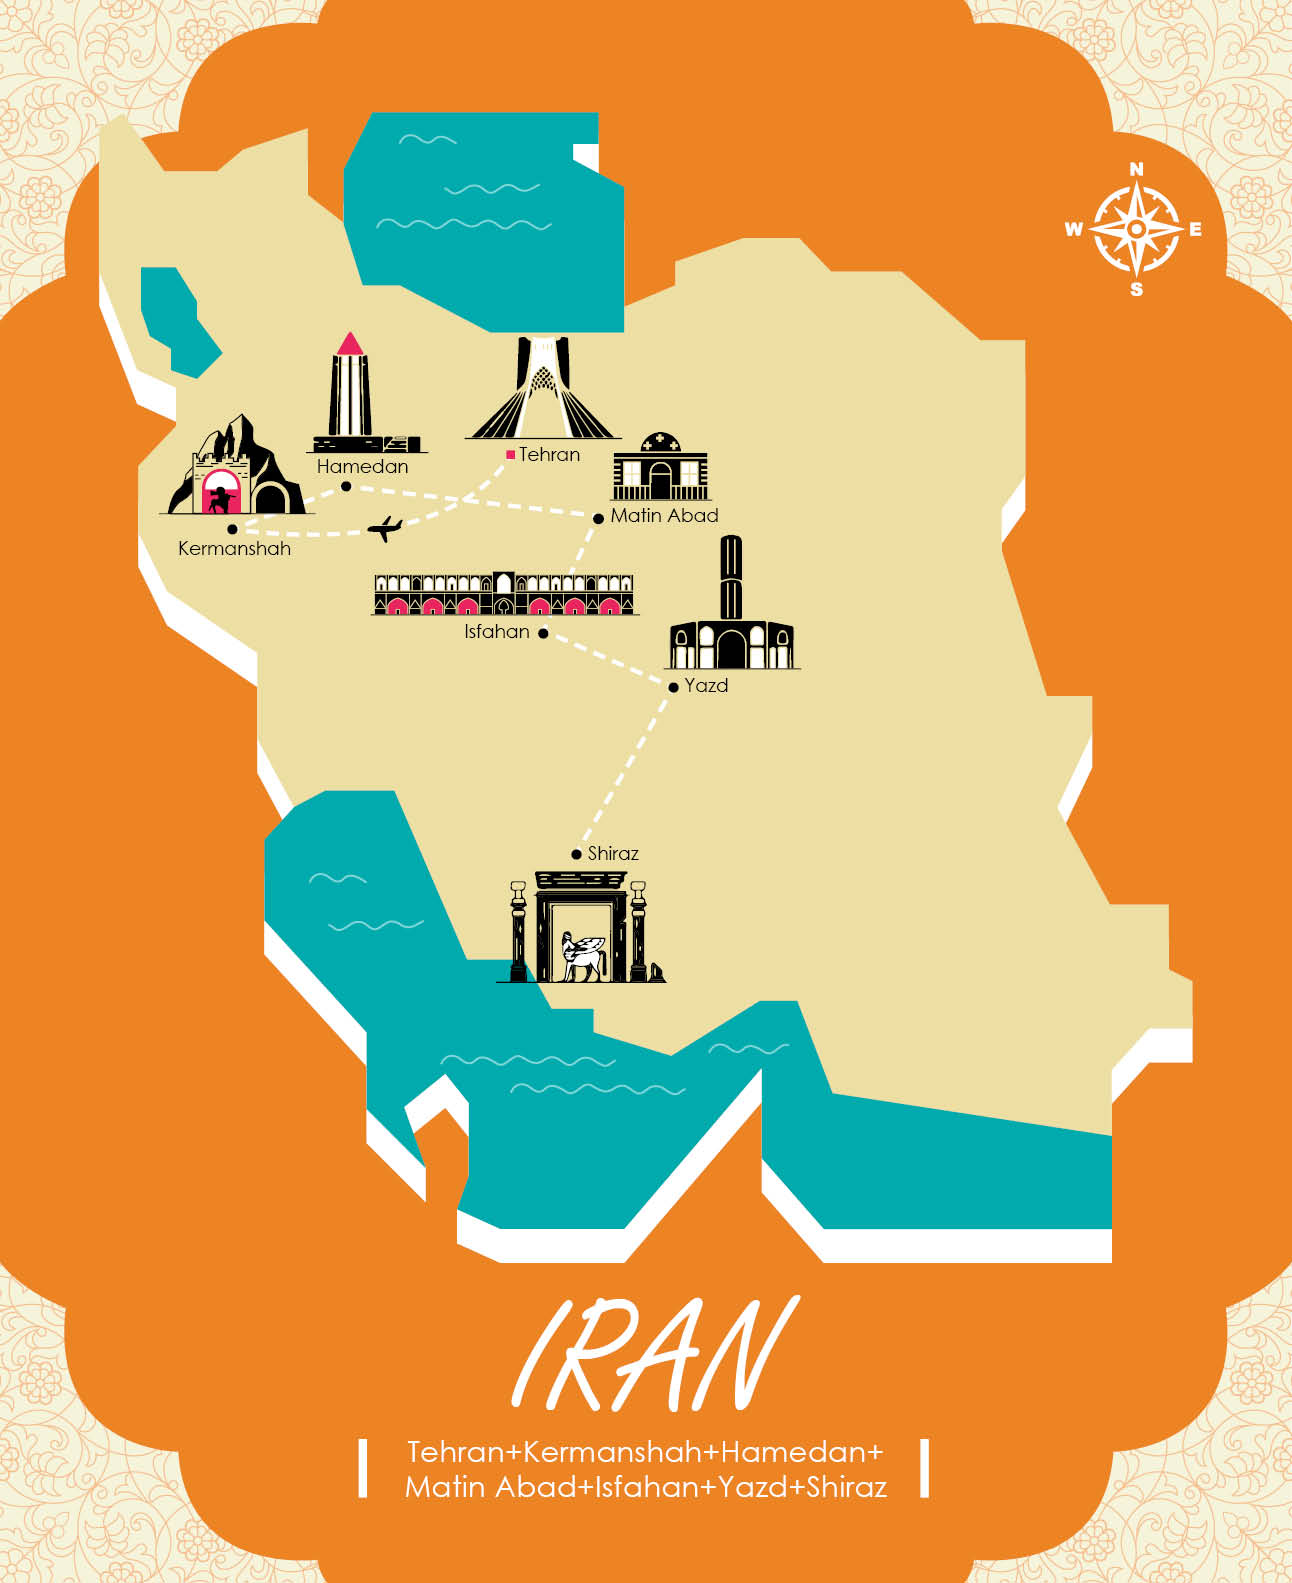 Iran tour: Tehran, Kermanshah, Hamedan, Isfahan & more